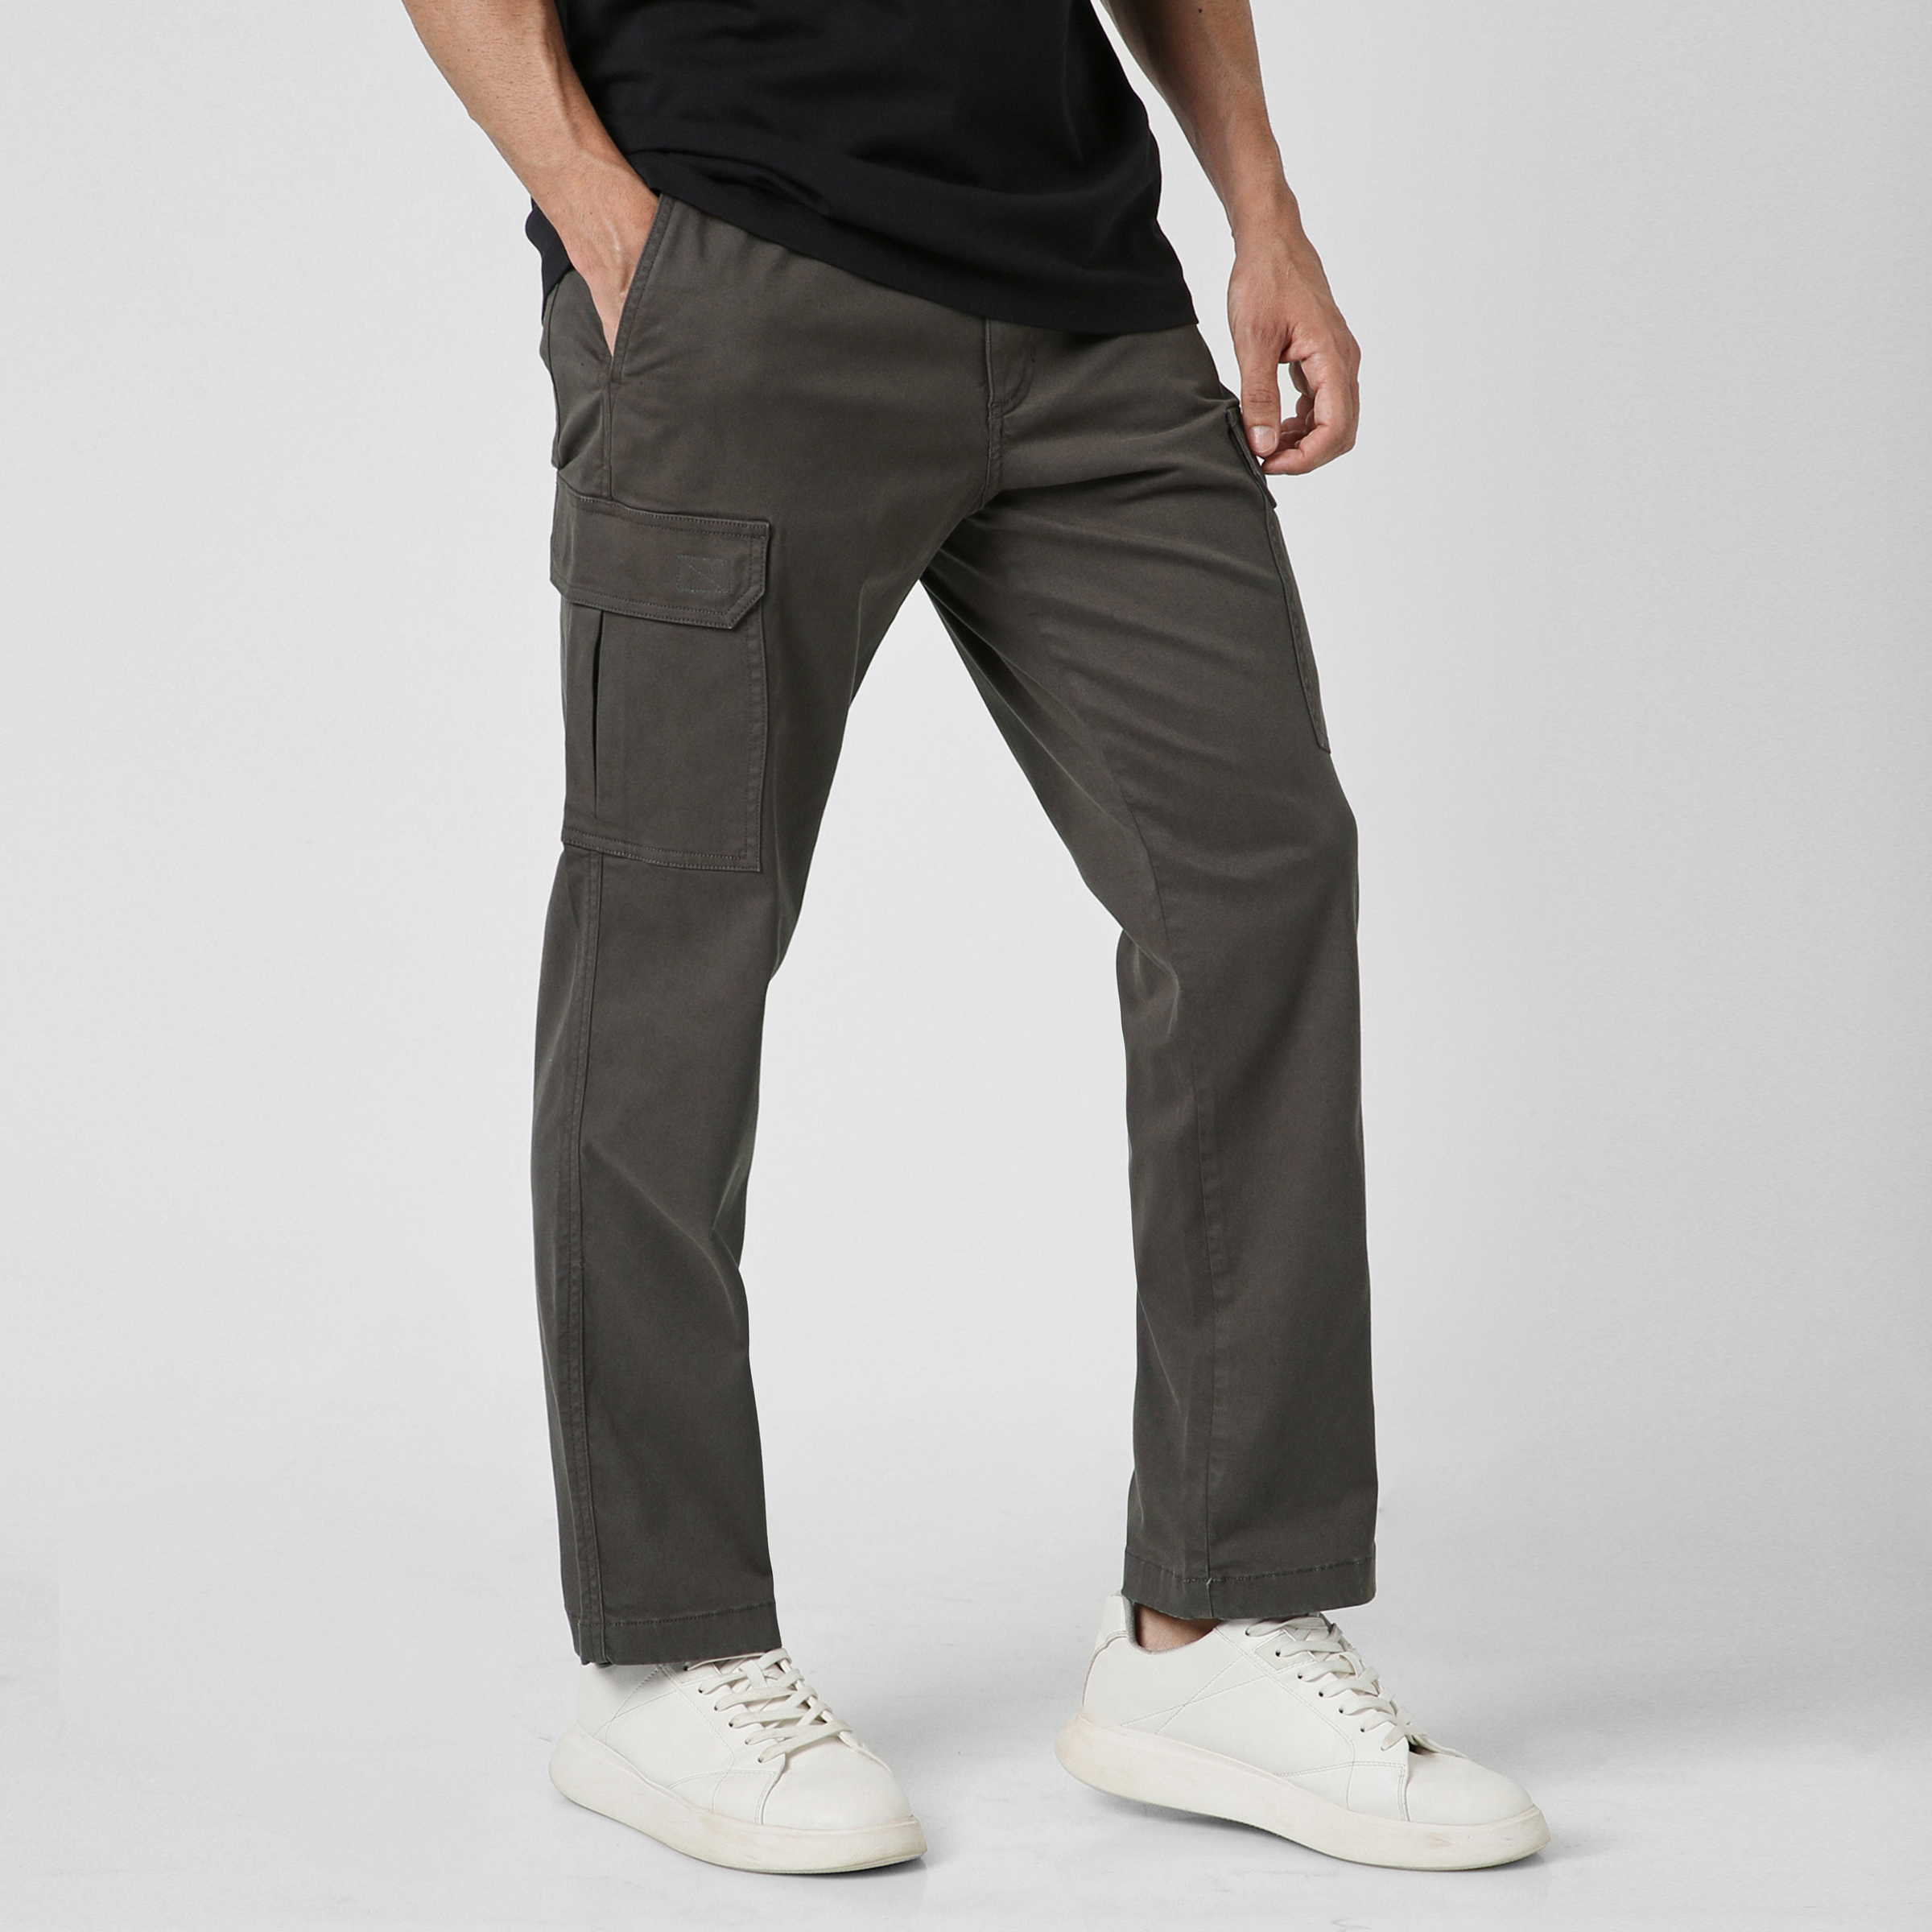 Coolmance Stretch Pants, Stretchactive - Men's Ultra Stretch Cargo Pants